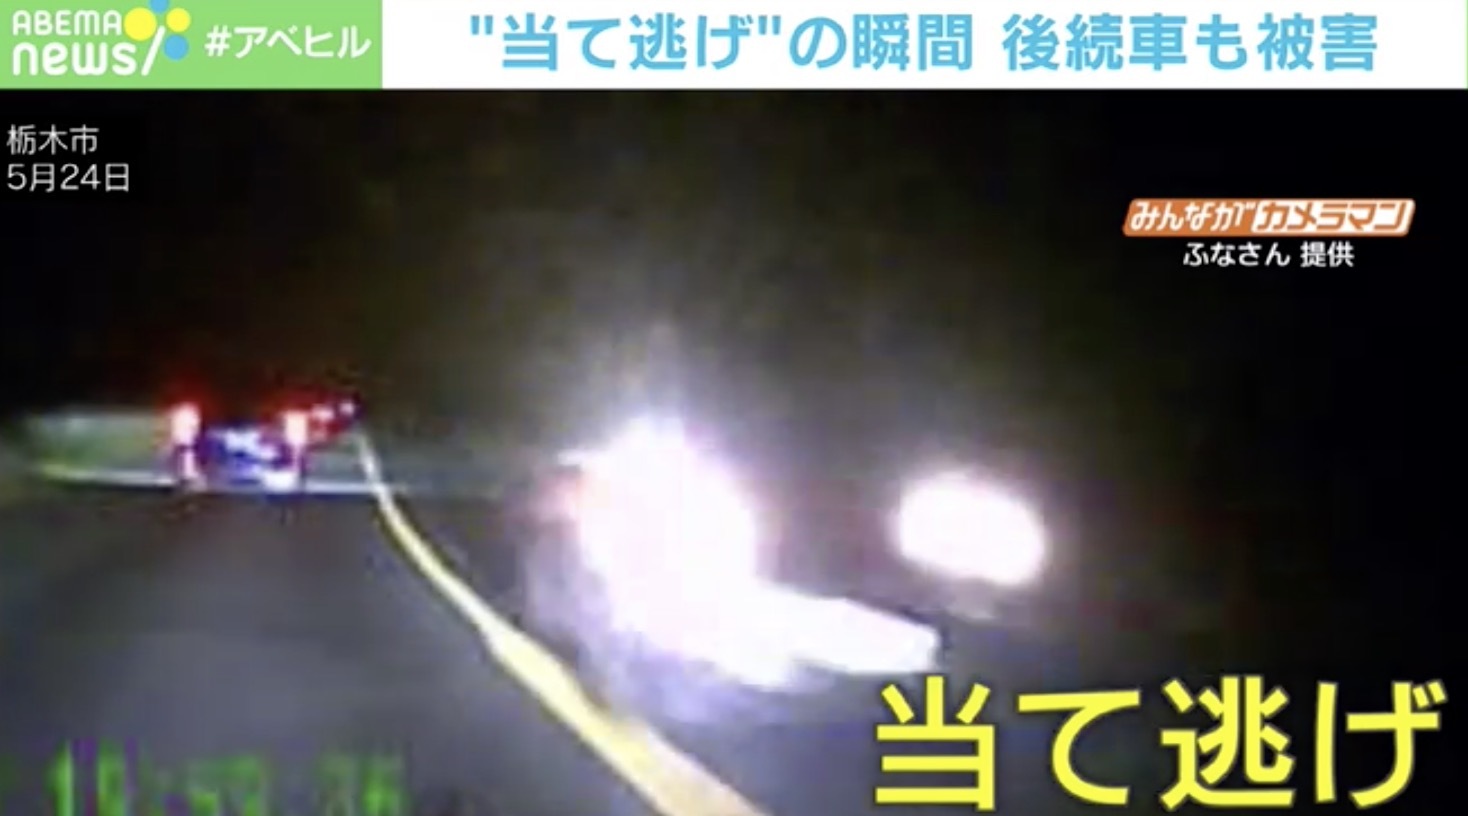 ドアミラーを一瞬で破壊 対向車 当て逃げ の瞬間 栃木県 ニコニコニュース